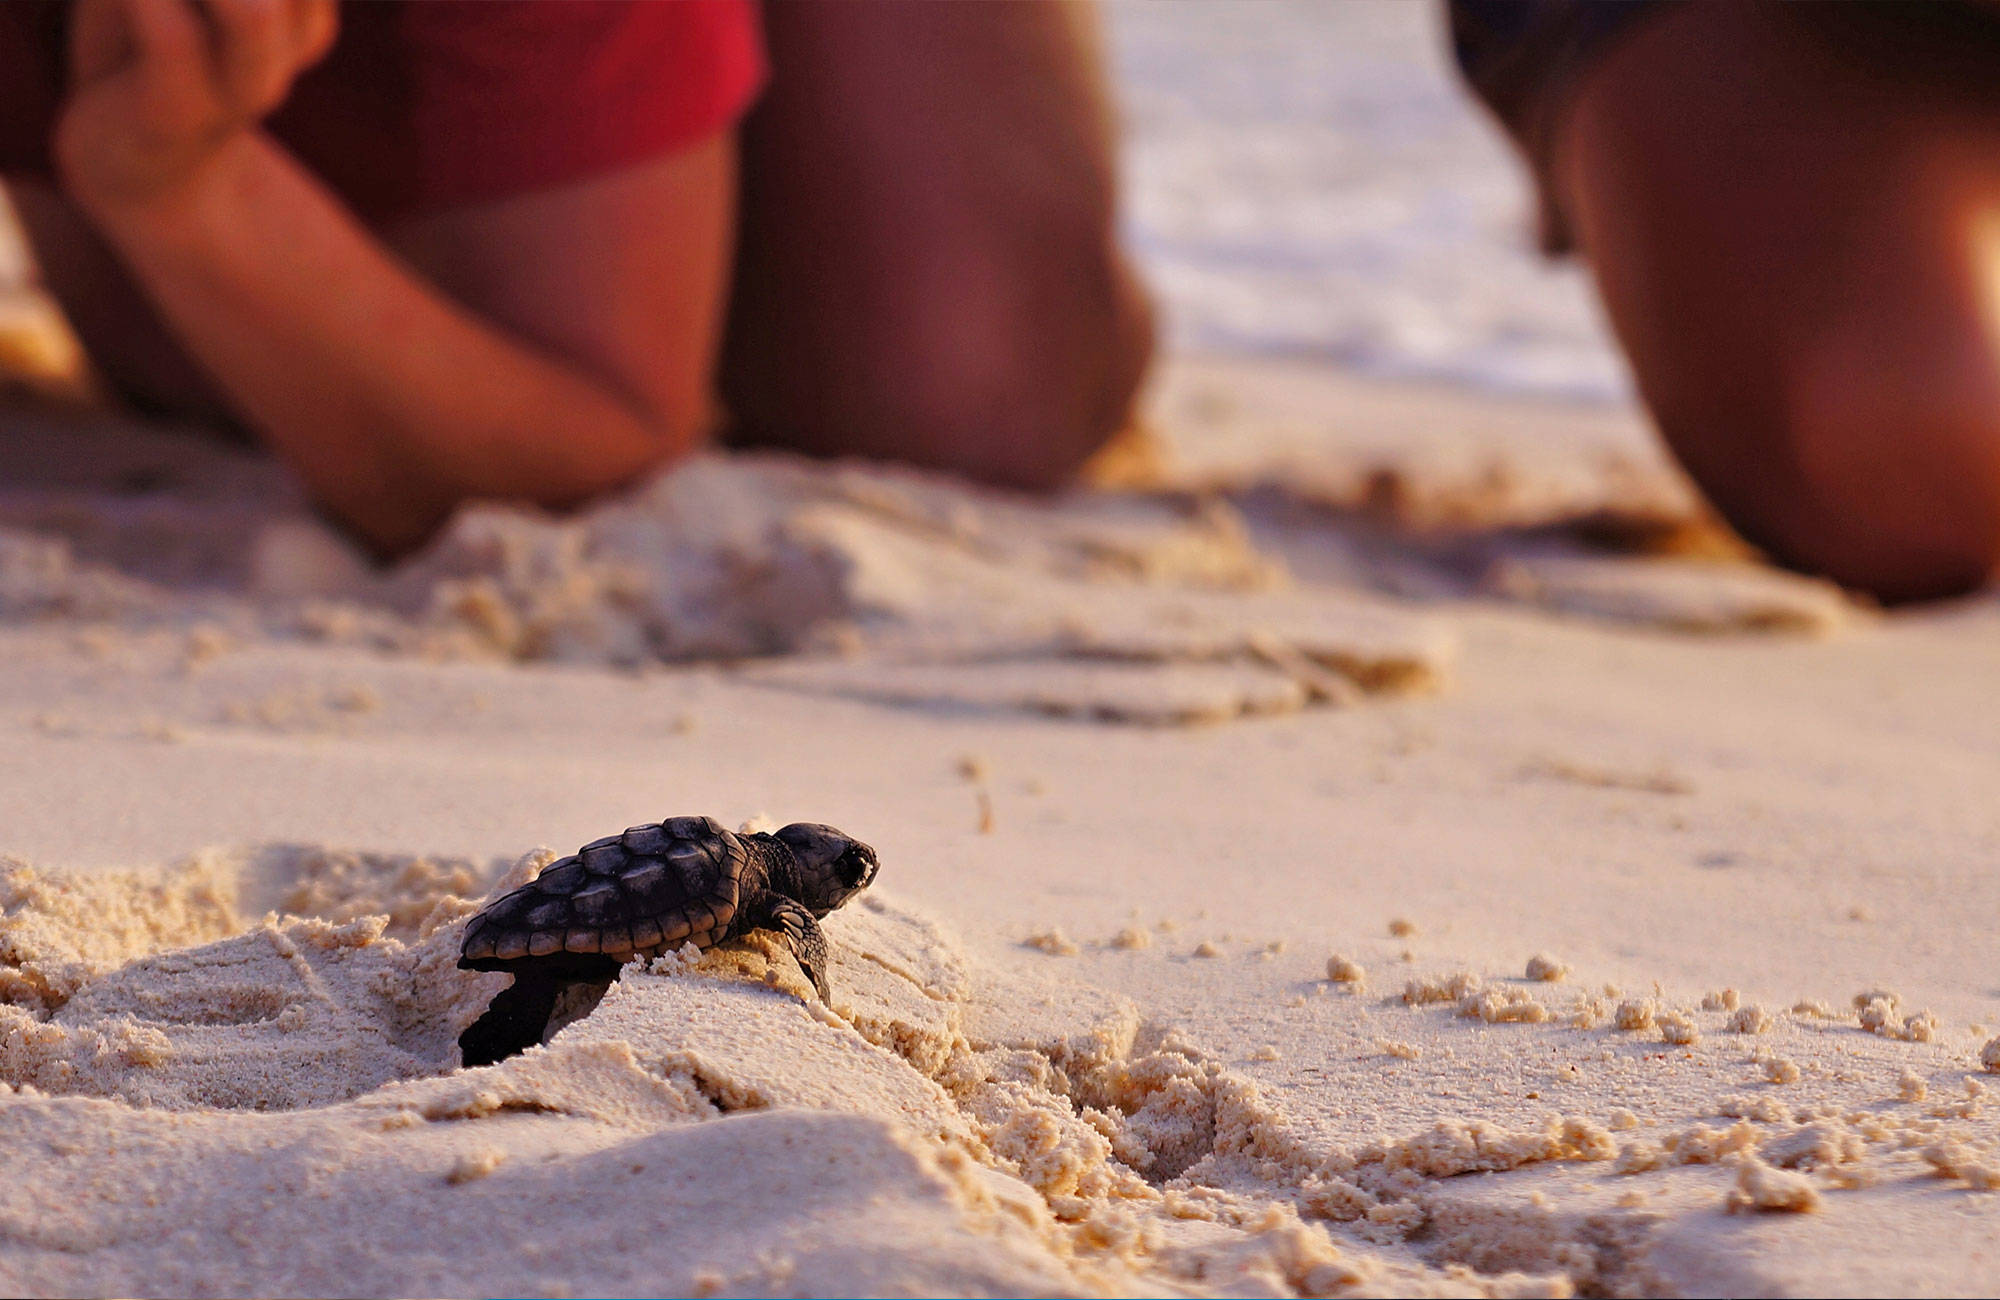 Osallistu vastakuoriuneiden kilpikonnien suojeluun maailmalla - KILROY